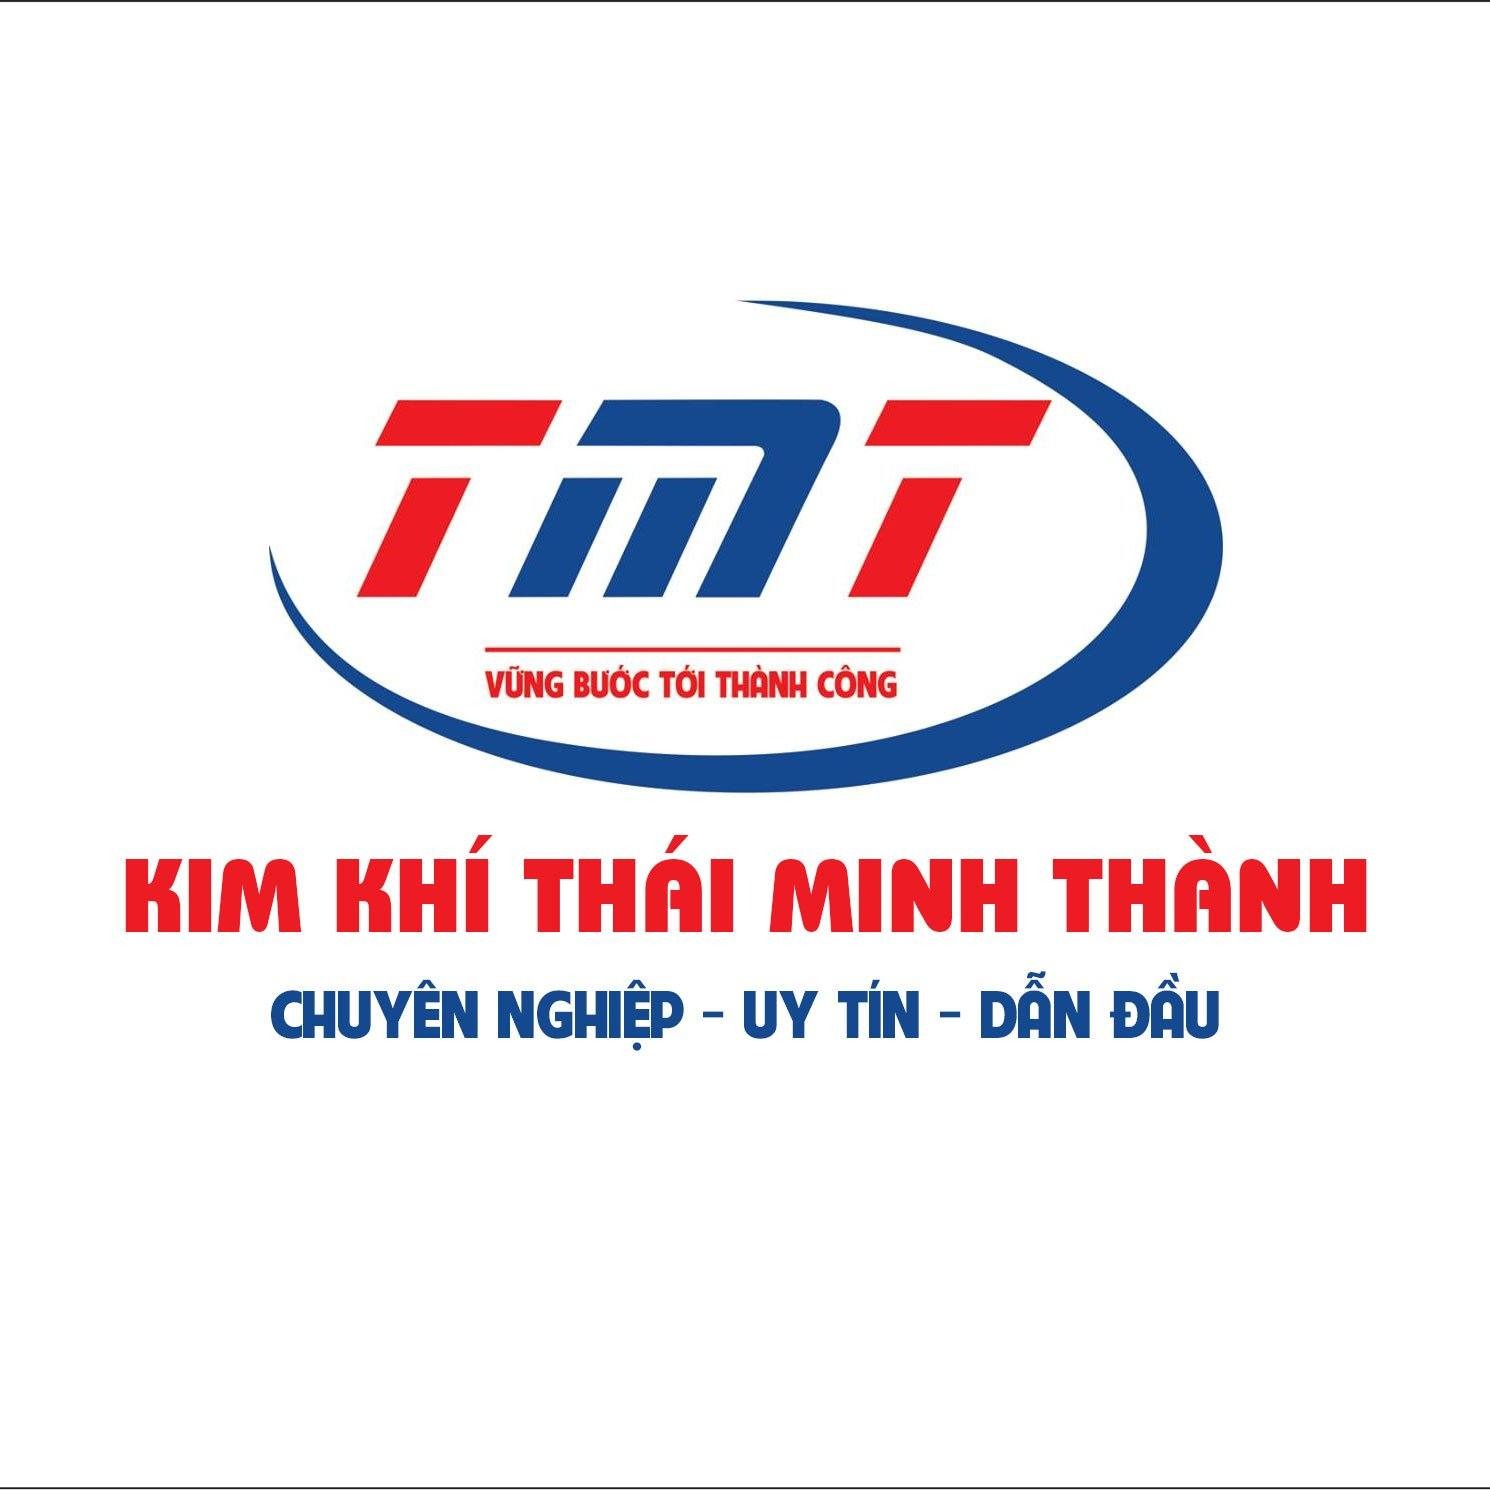 Kim Khí Thái Minh Thành